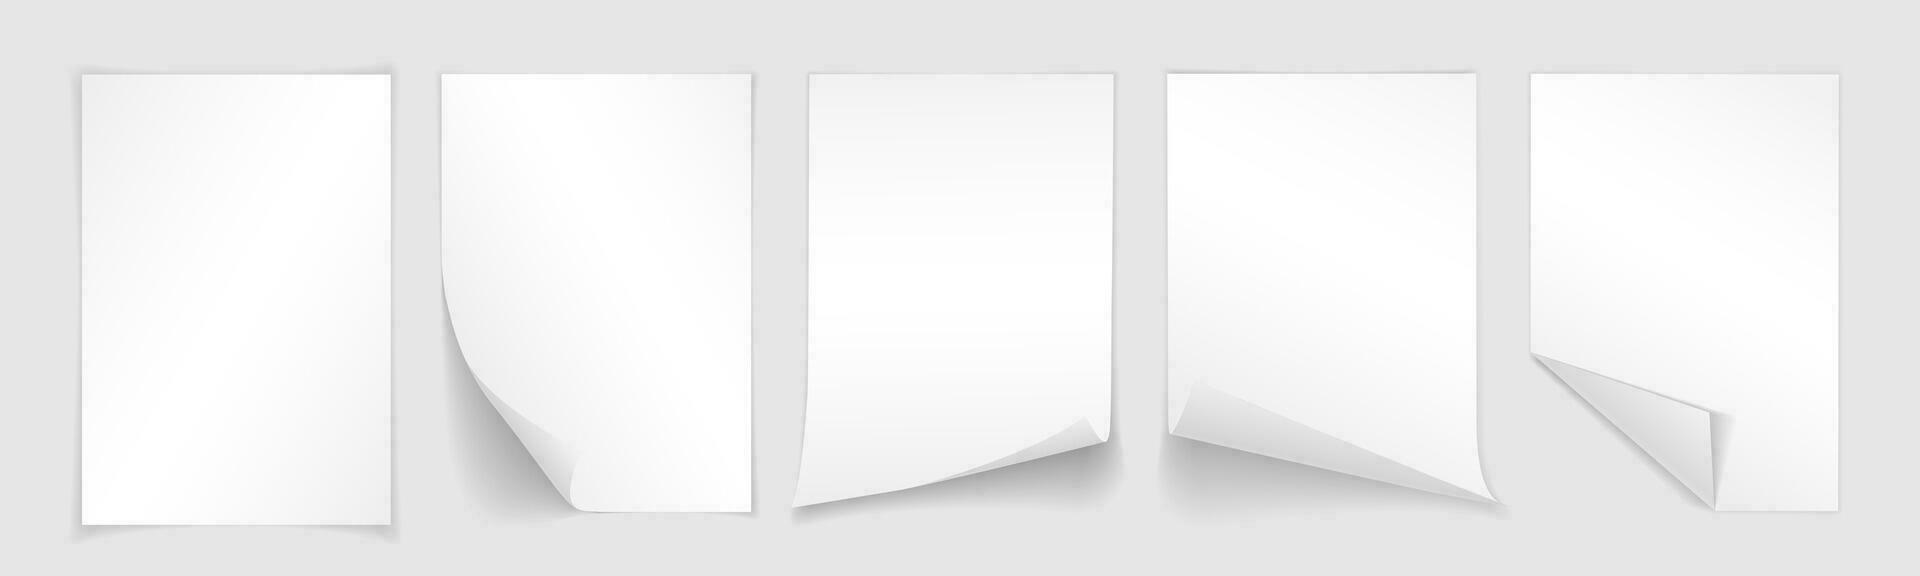 blanco a4 sábana de blanco papel con rizado esquina y sombra, modelo para tu diseño. colocar. vector ilustración